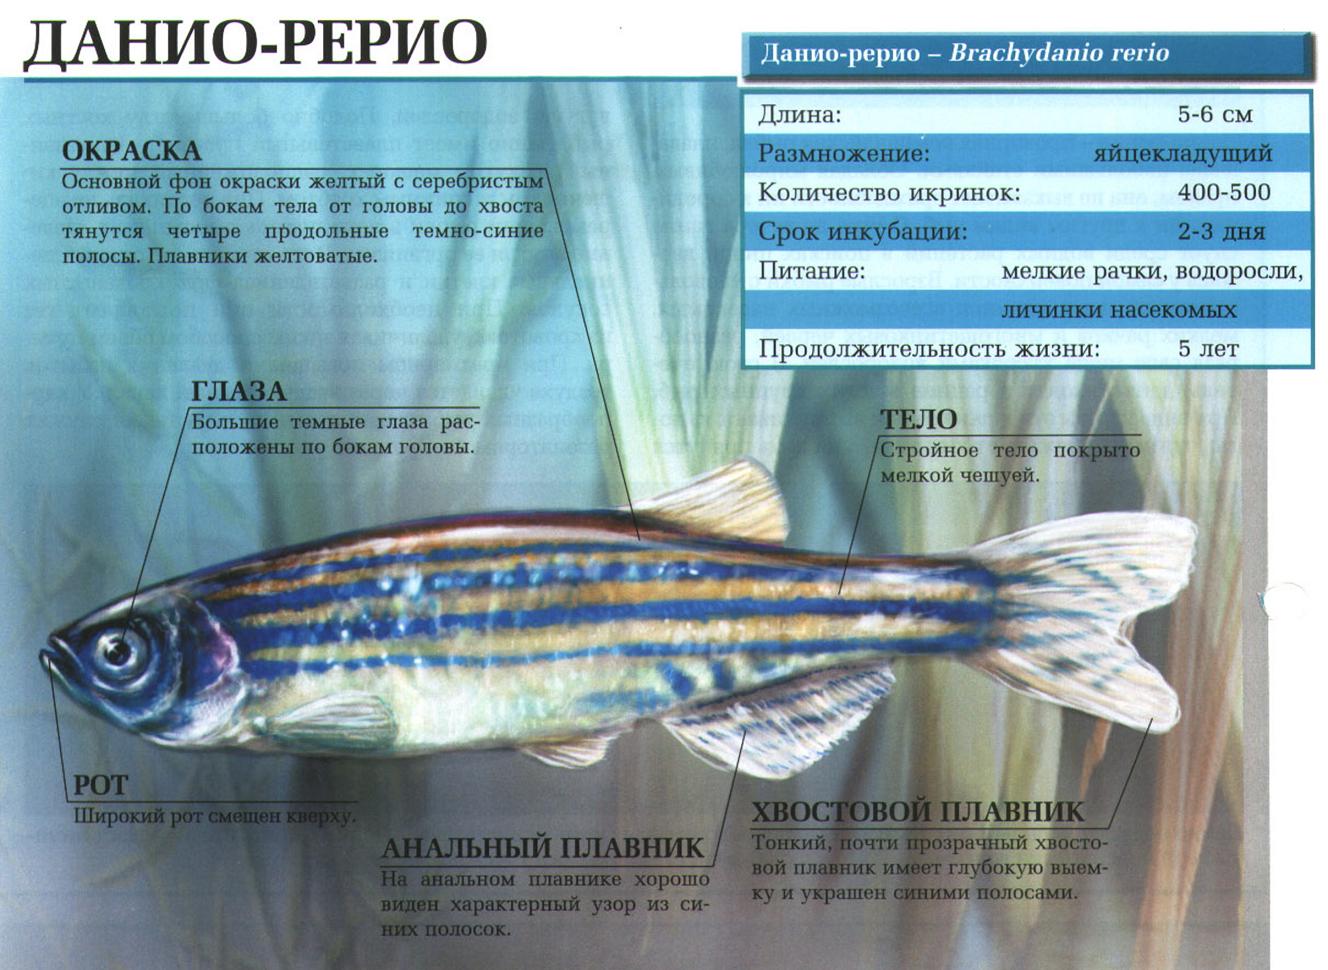 Описание рыбки данио-рерио.